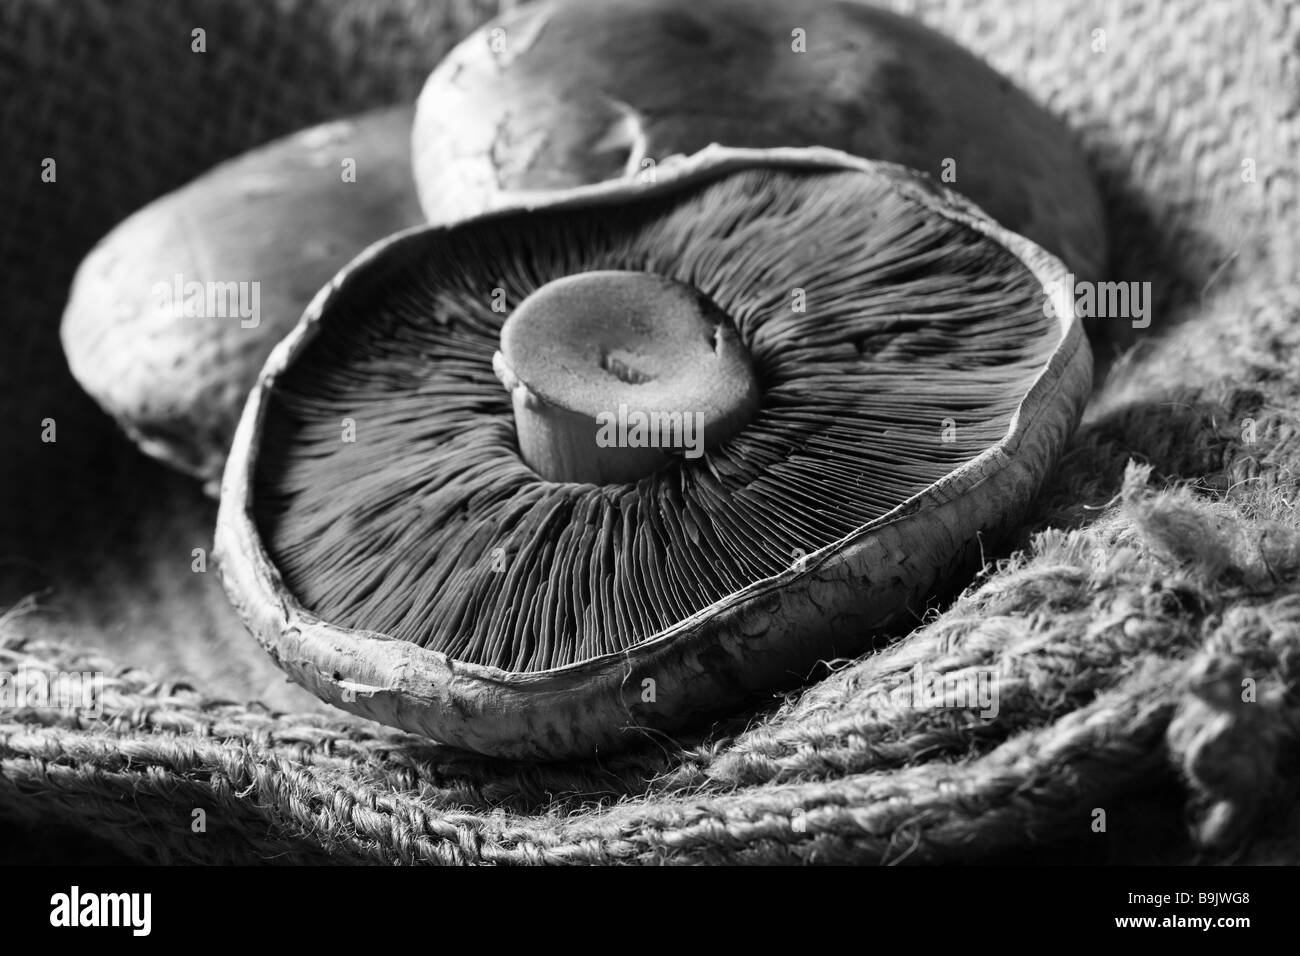 La vie encore de trois champignons portobello avec accent à l'avant du bord de champignons Banque D'Images